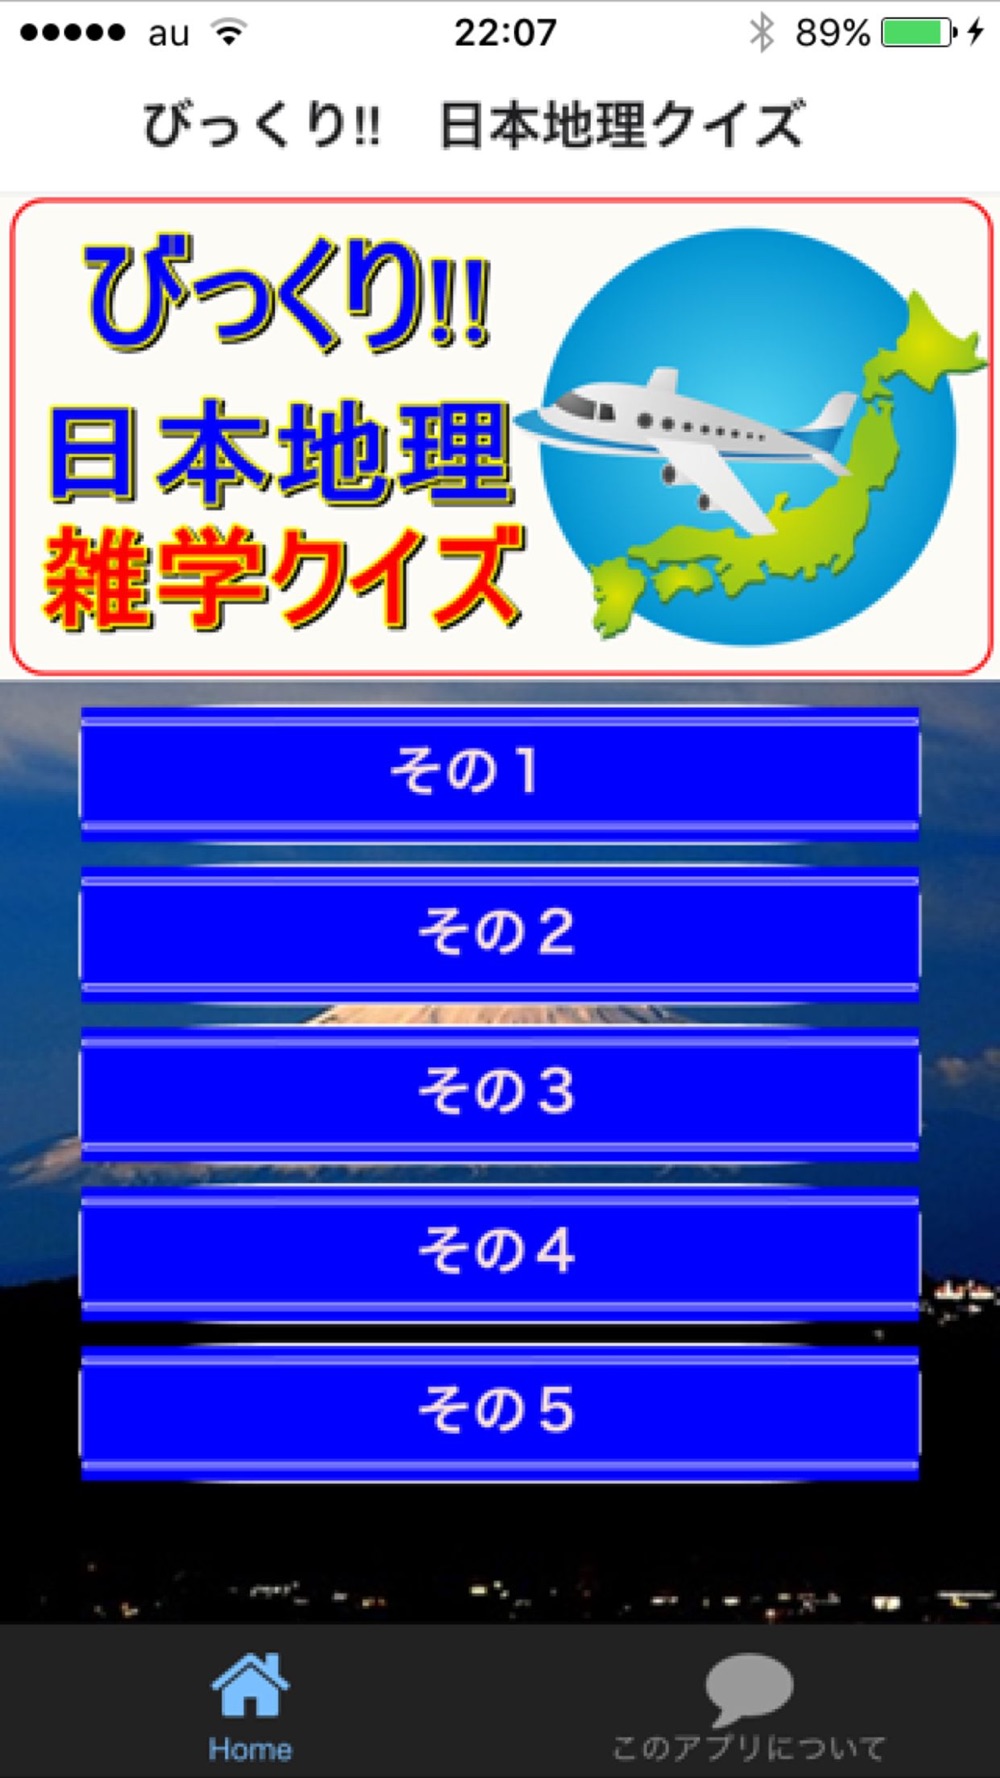 びっくり 日本地理 雑学クイズ Free Download App For Iphone Steprimo Com